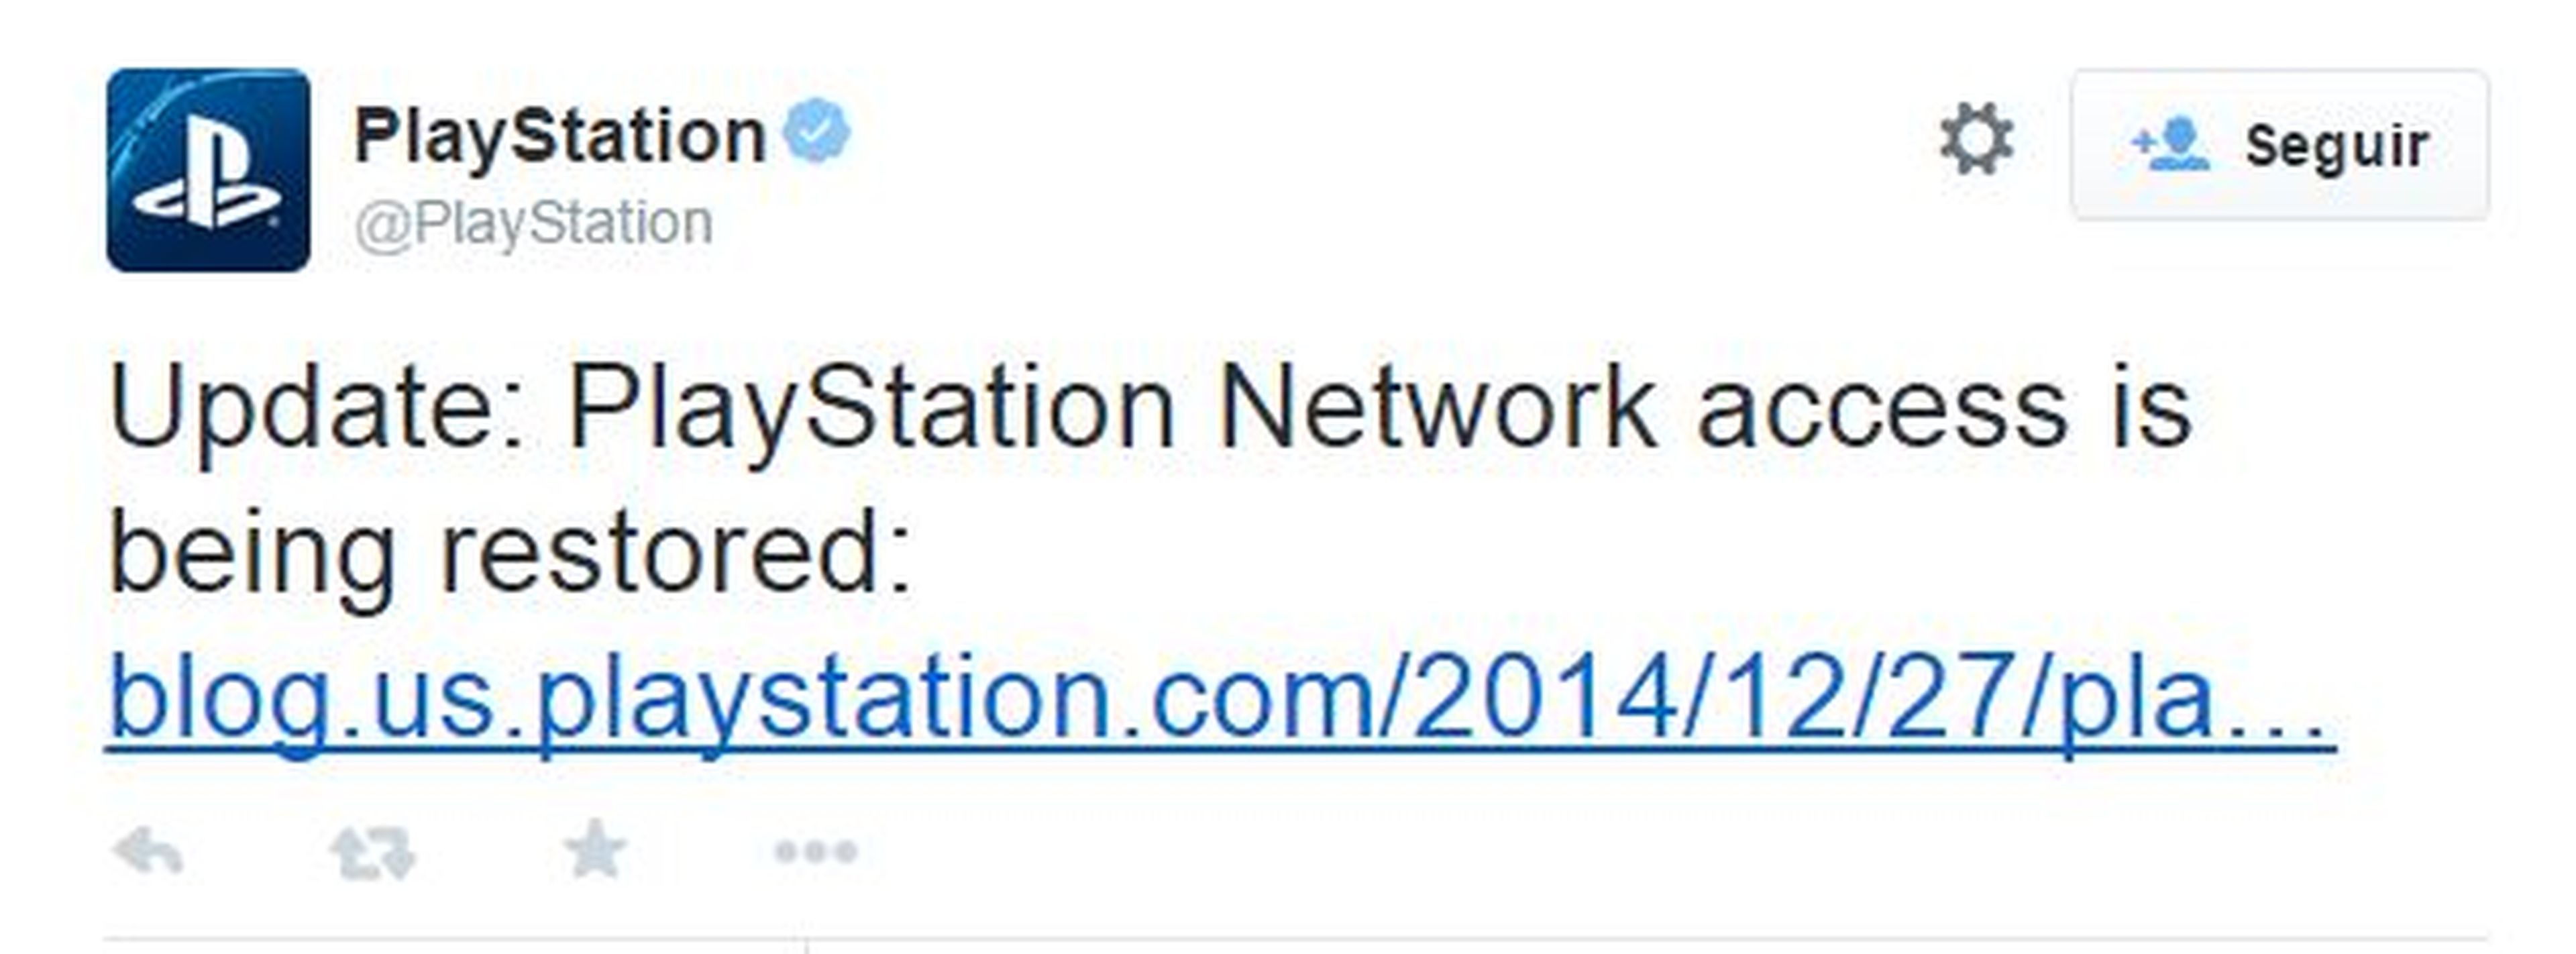 PS4 sigue experimentando problemas de acceso a PSN